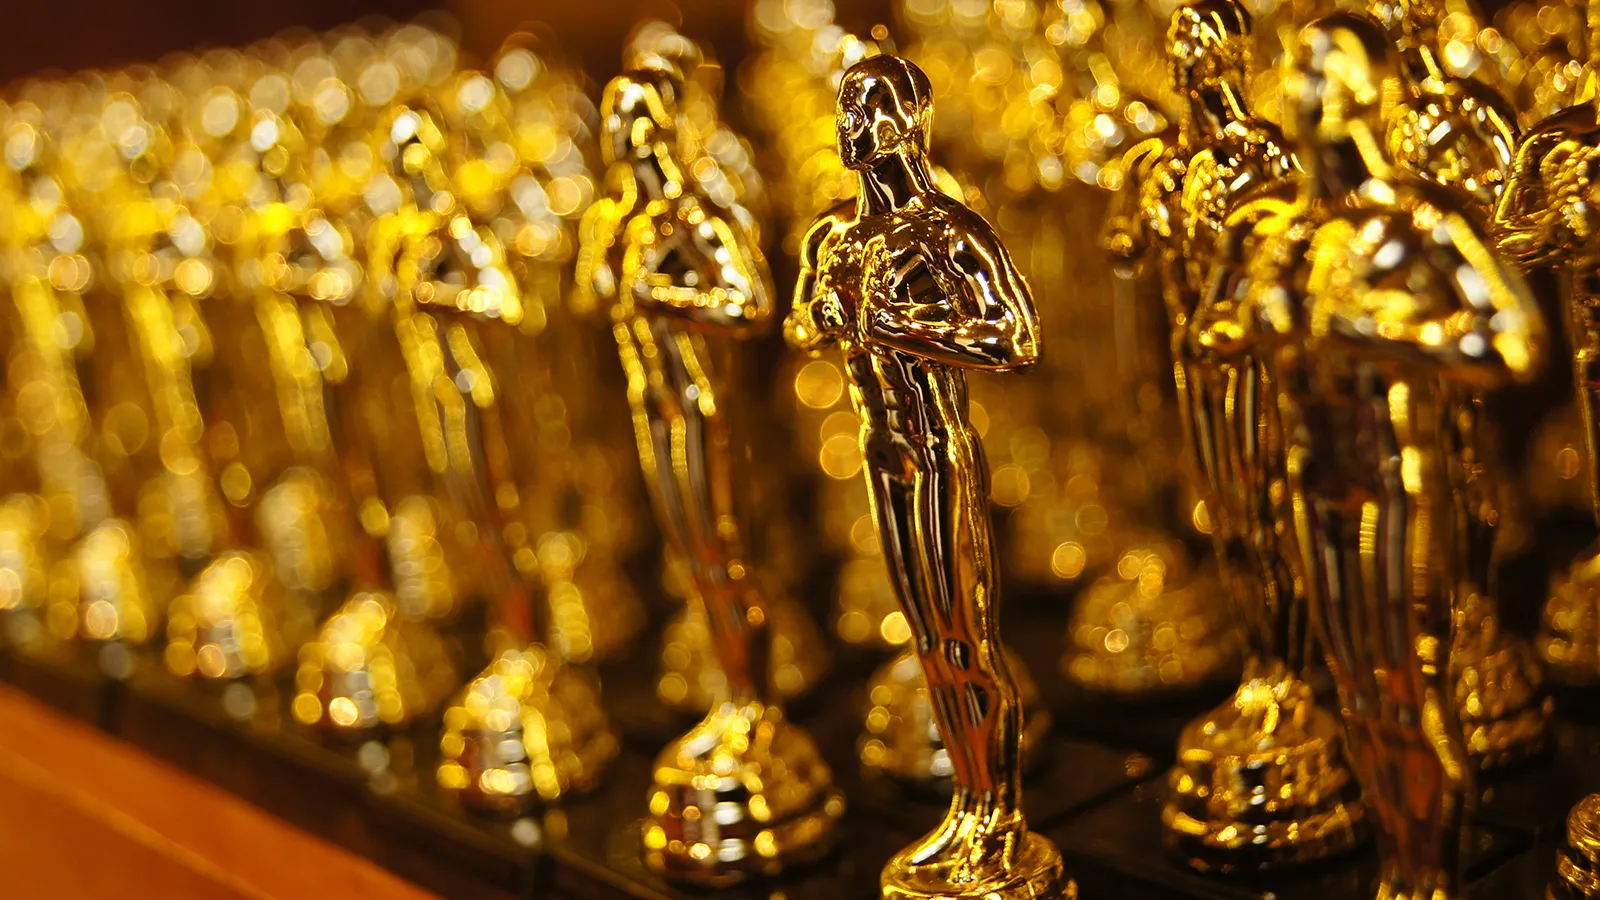 2023 yılı Oscar adayları açıklandı